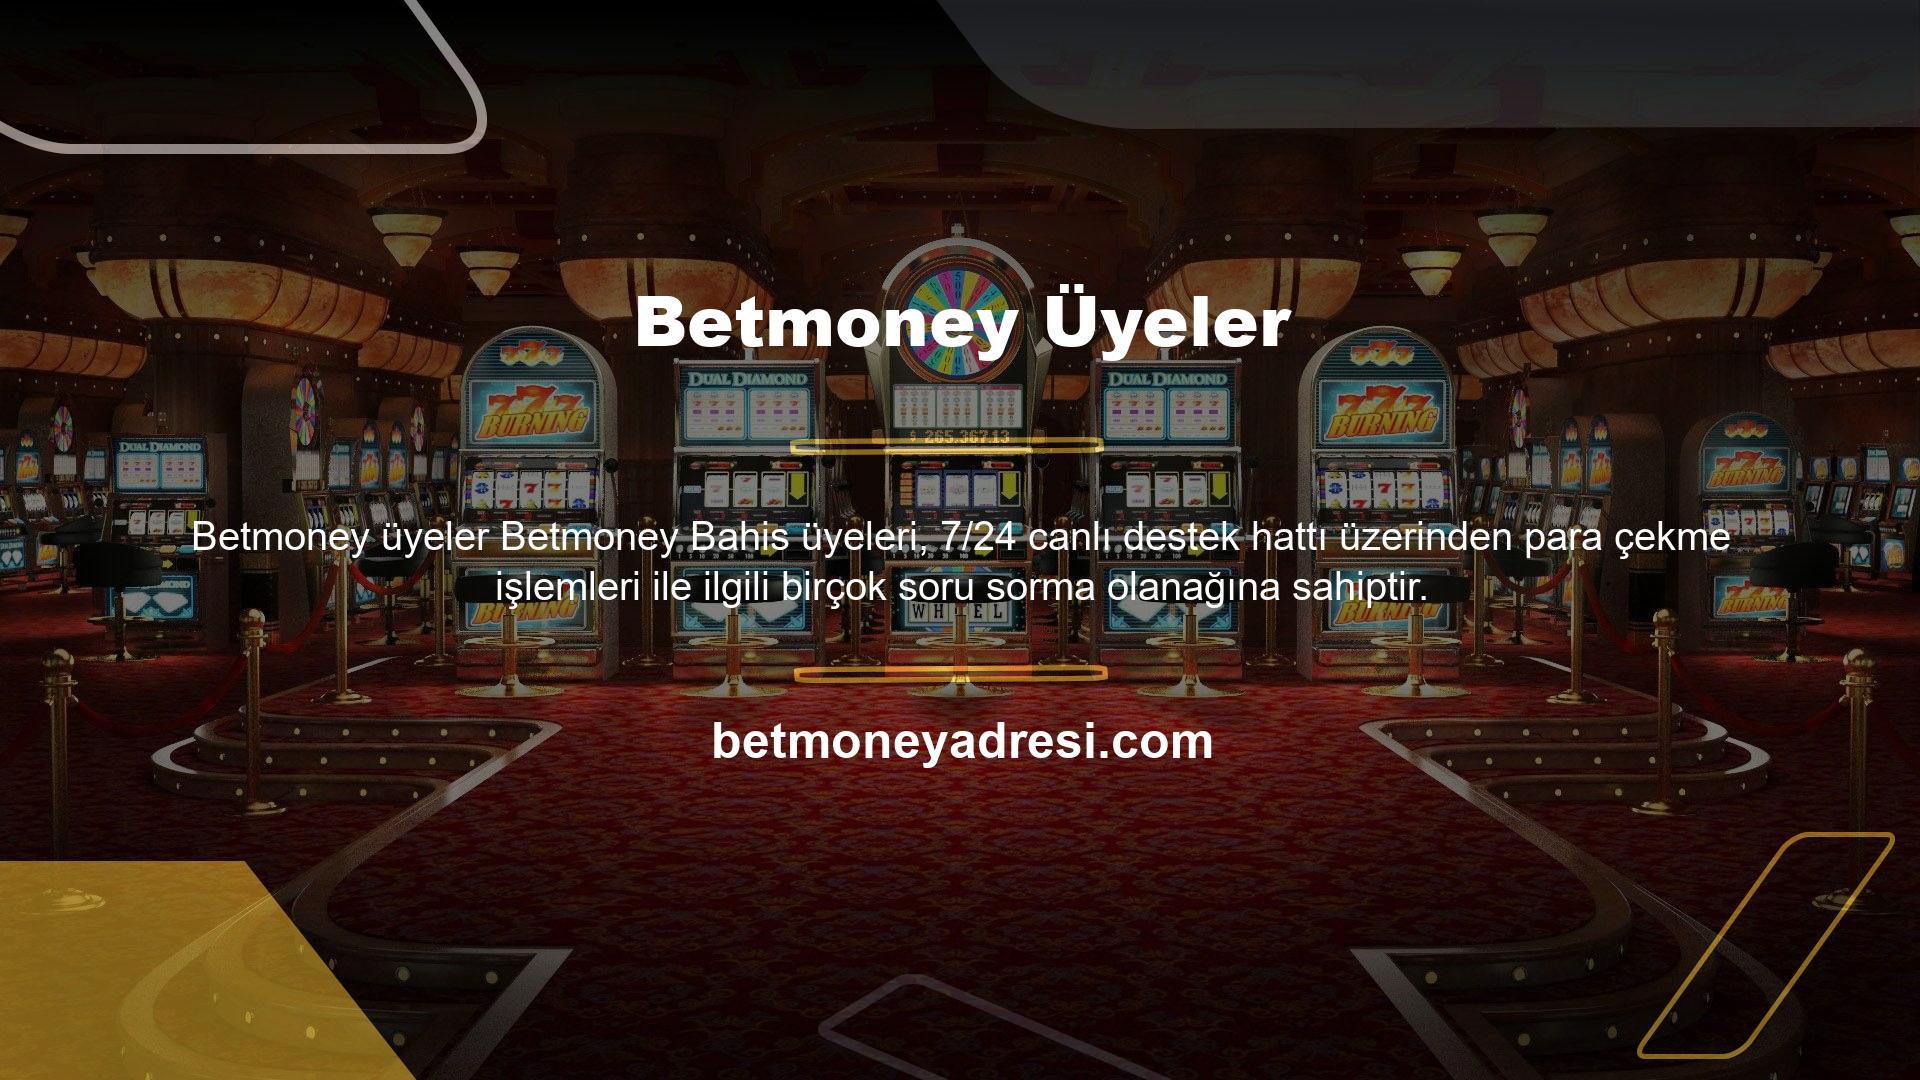 Betmoney Bahis, kullanıcılarına güvenilir ve rahat para çekme imkanı sunar ve gelişerek büyüyen ve büyüyen bir platform haline gelmiştir